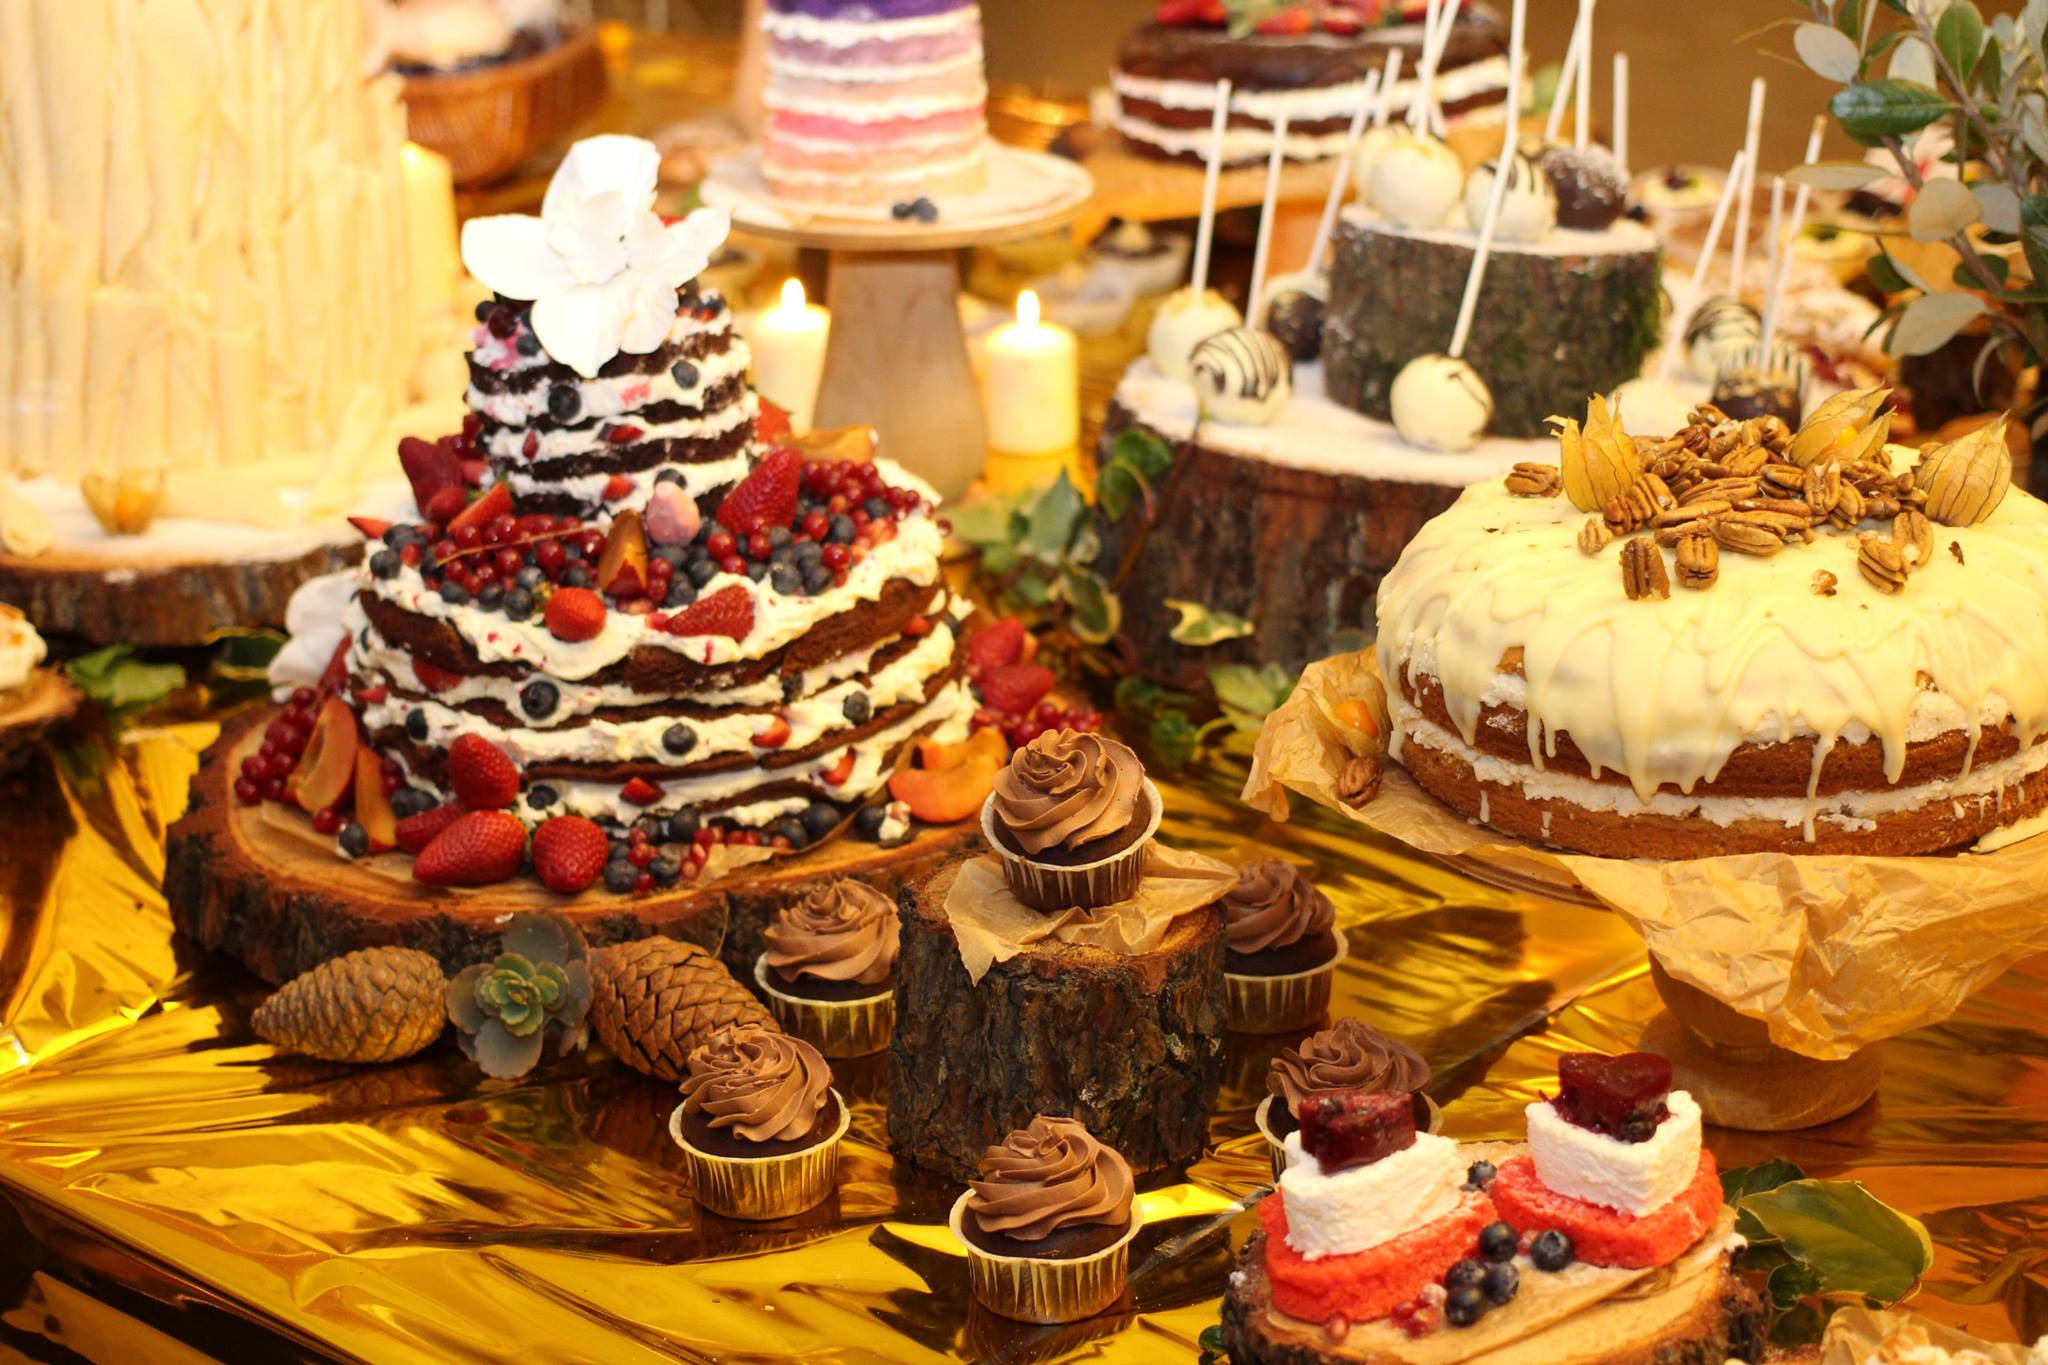 الفائز بلقب ( أفضل صانعي الحلوة لعام 2015 ) هو متجر الحلوى " بيسكفيتنيي دفور " .